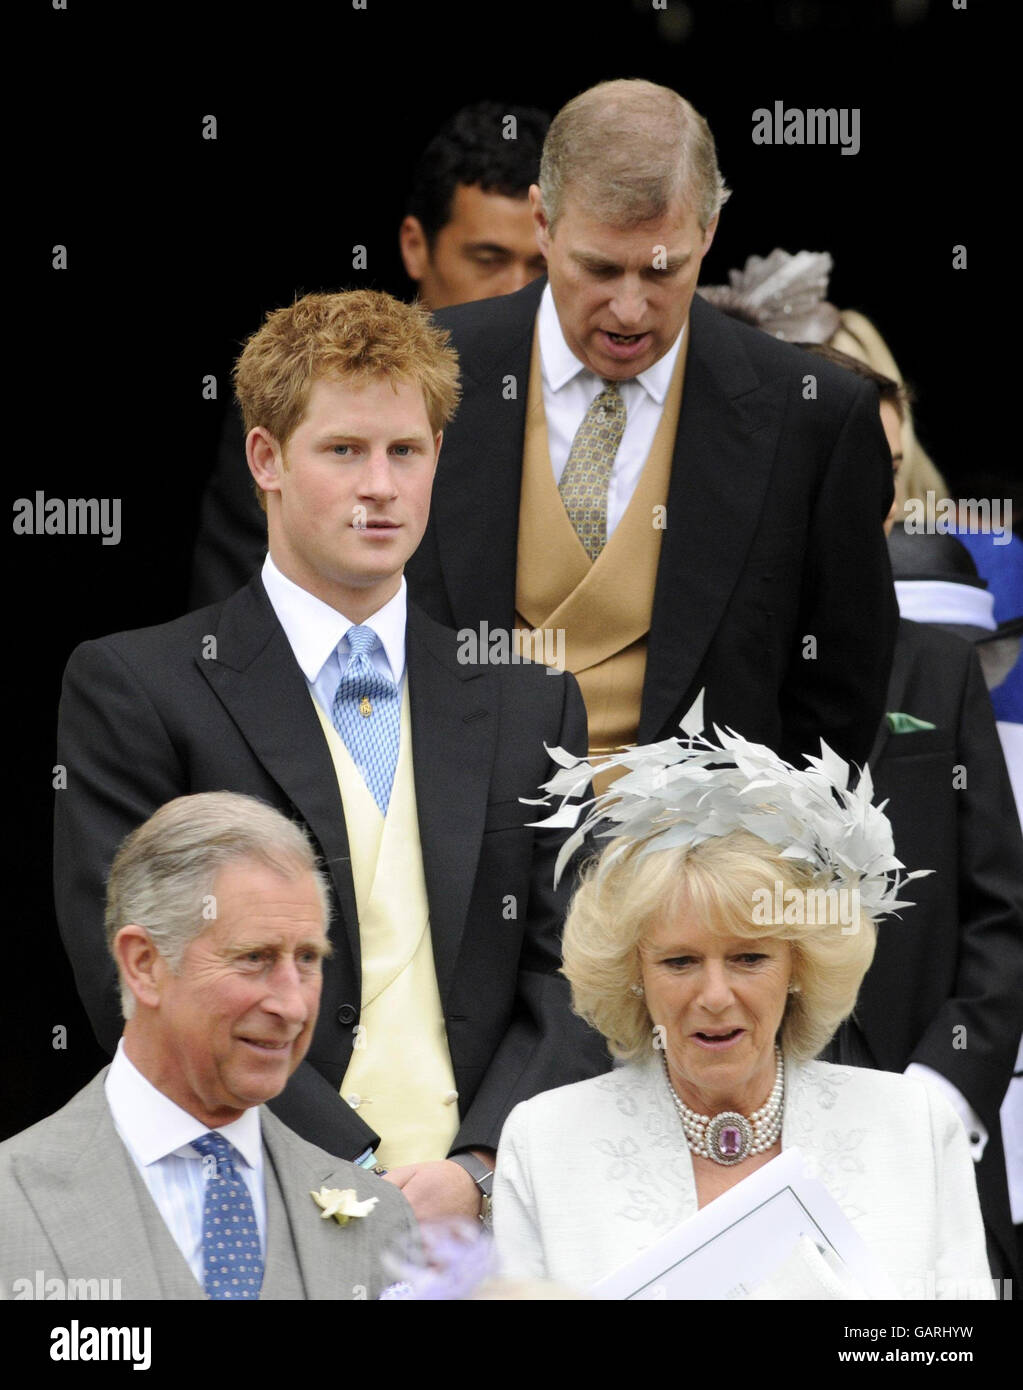 Der Herzog von York, Prinz Harry, der Prinz von Wales und die Herzogin von Cornwall vor der St. George's Chapel in Windsor, England, nach der Hochzeitszeremonie von Peter Phillips und Autumn Kelly. Stockfoto